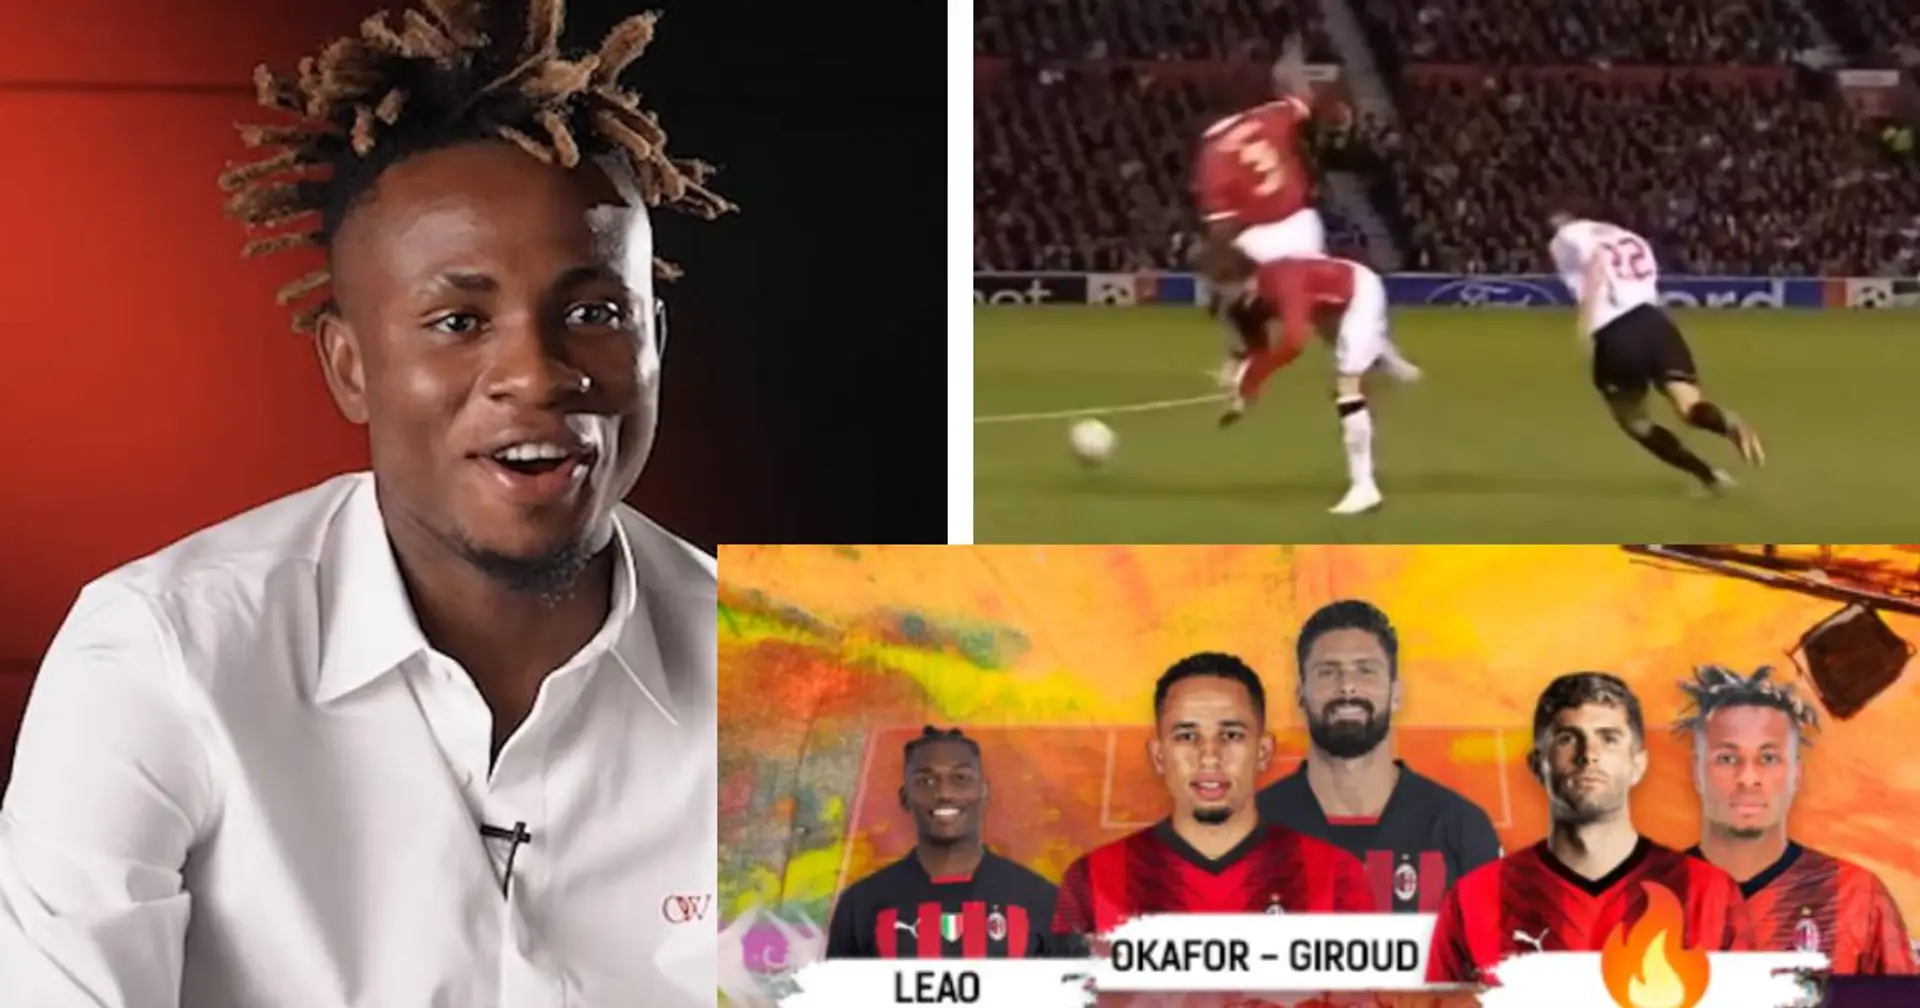 "Ho visto i loro video su Youtube": il ruolo al Milan e i 2 idoli da imitare, Chukwueze si presenta